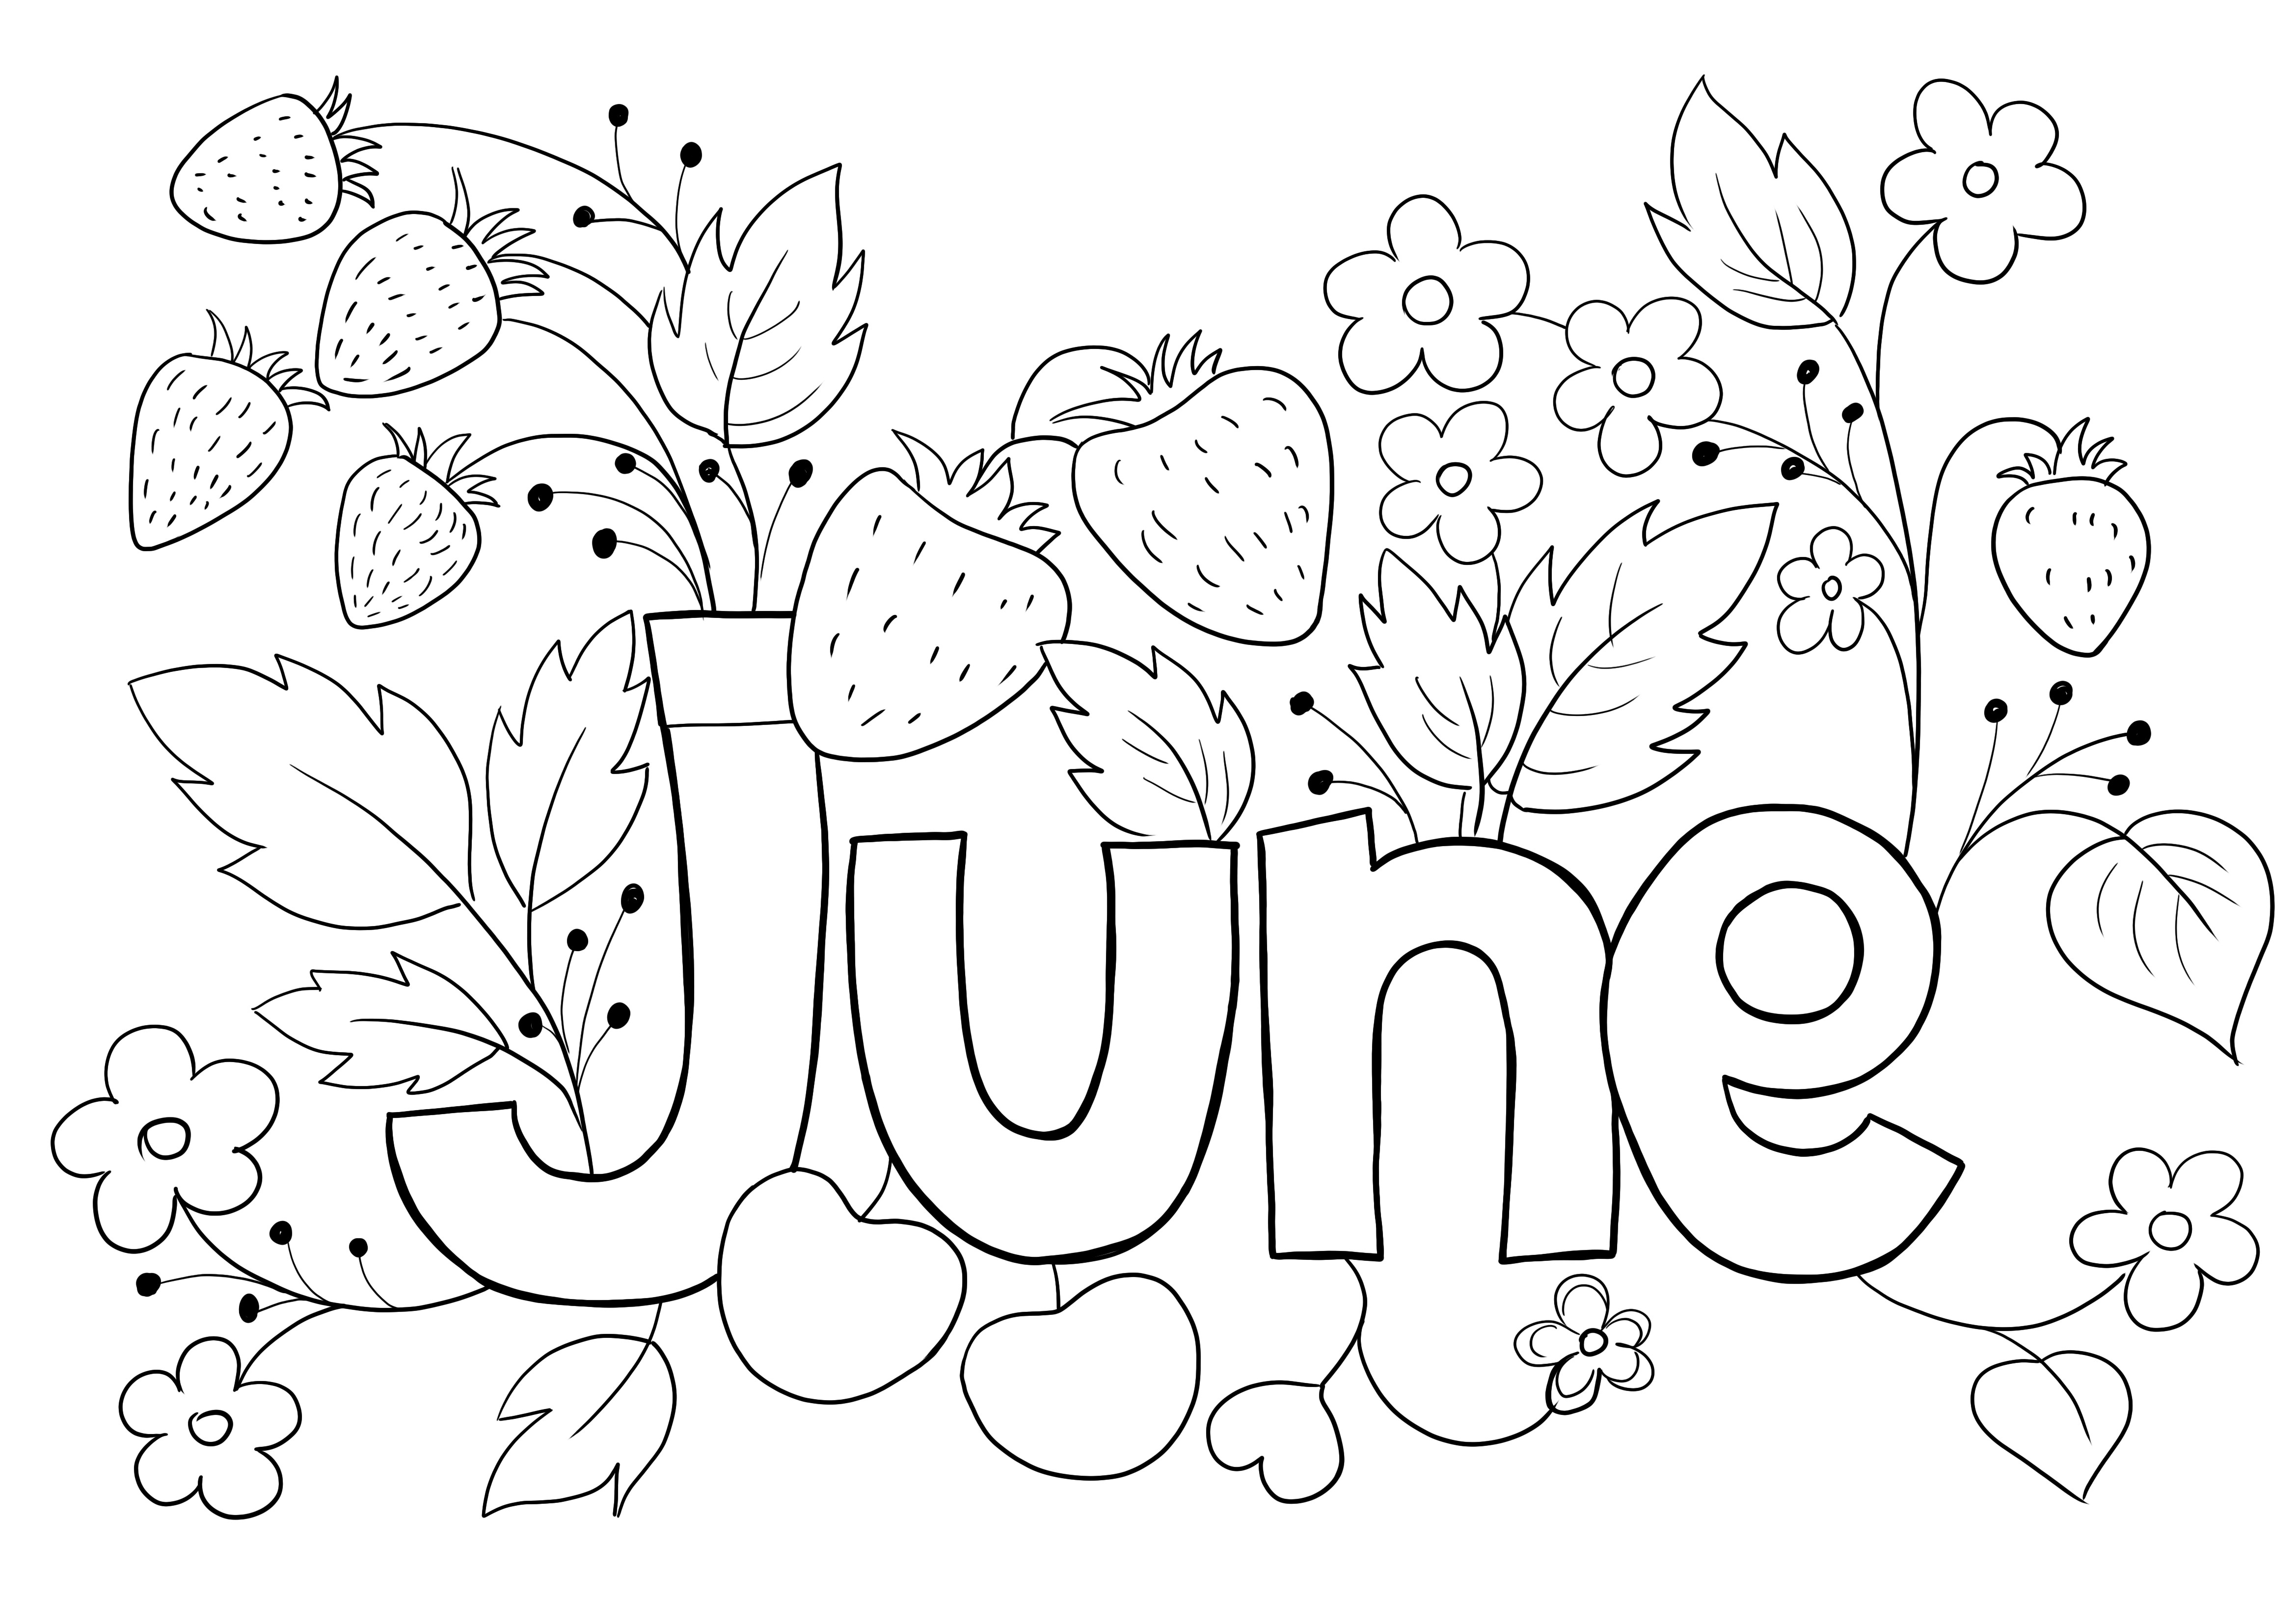 Luna iunie a sezonului de vară imagine de colorat pentru imprimare gratuită